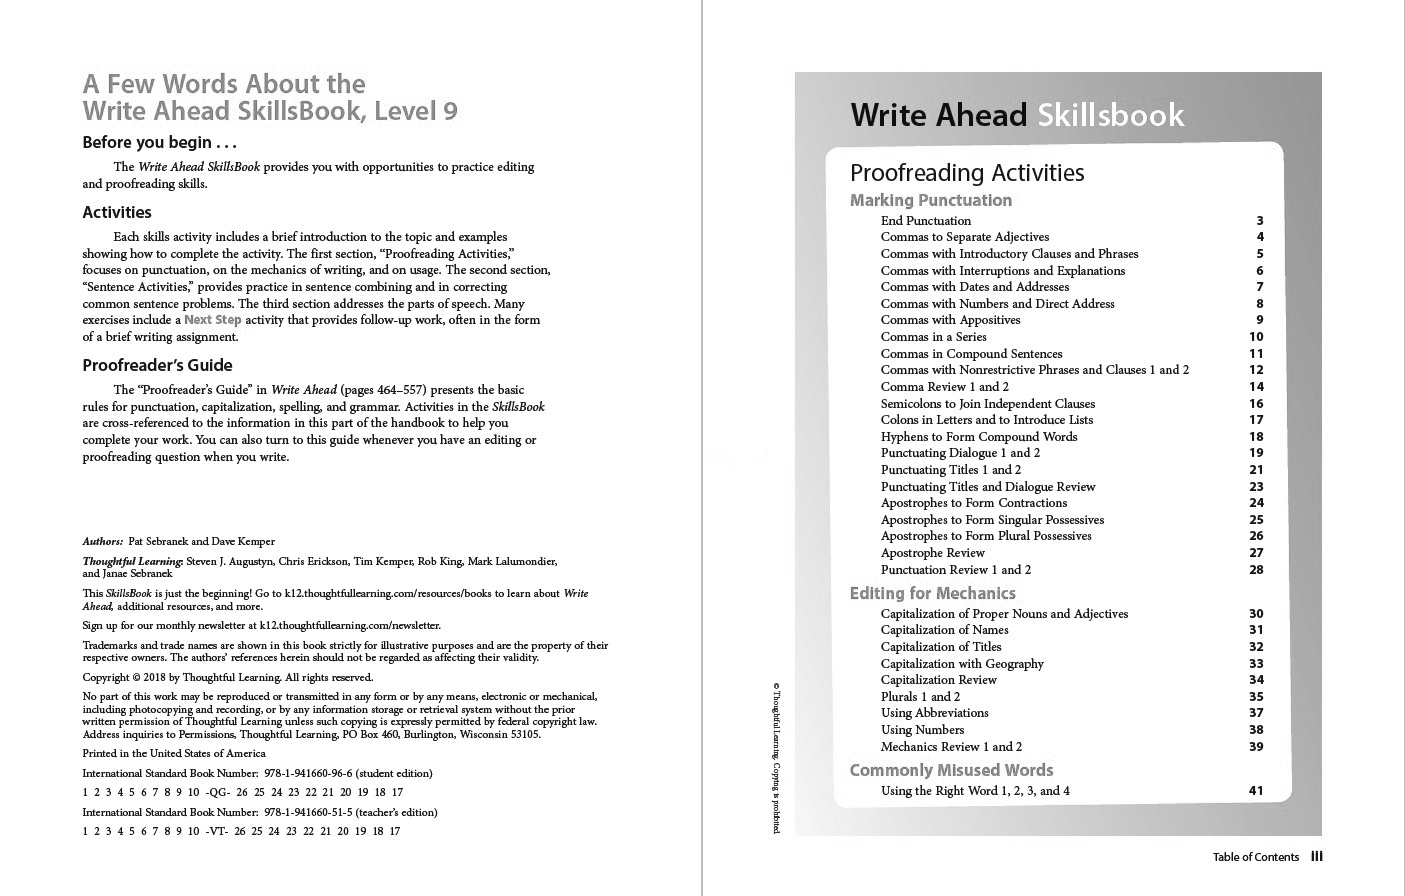 Write Ahead SkillsBook Grade 9 Page ii